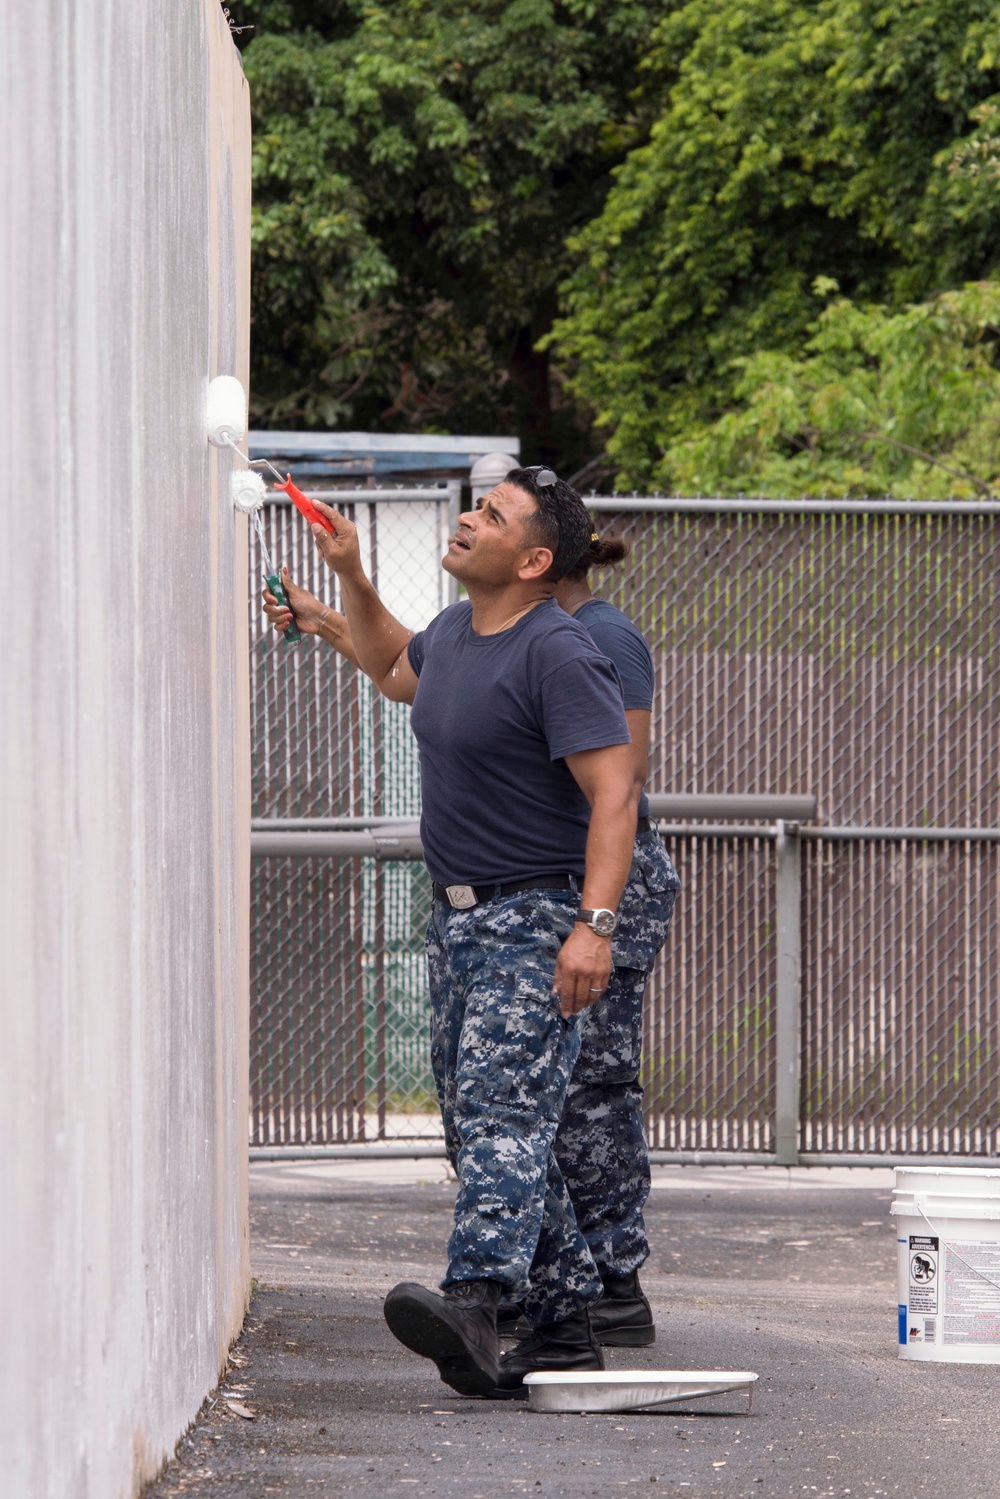 Sailors paint crisis center during Fleet Week Port Everglades